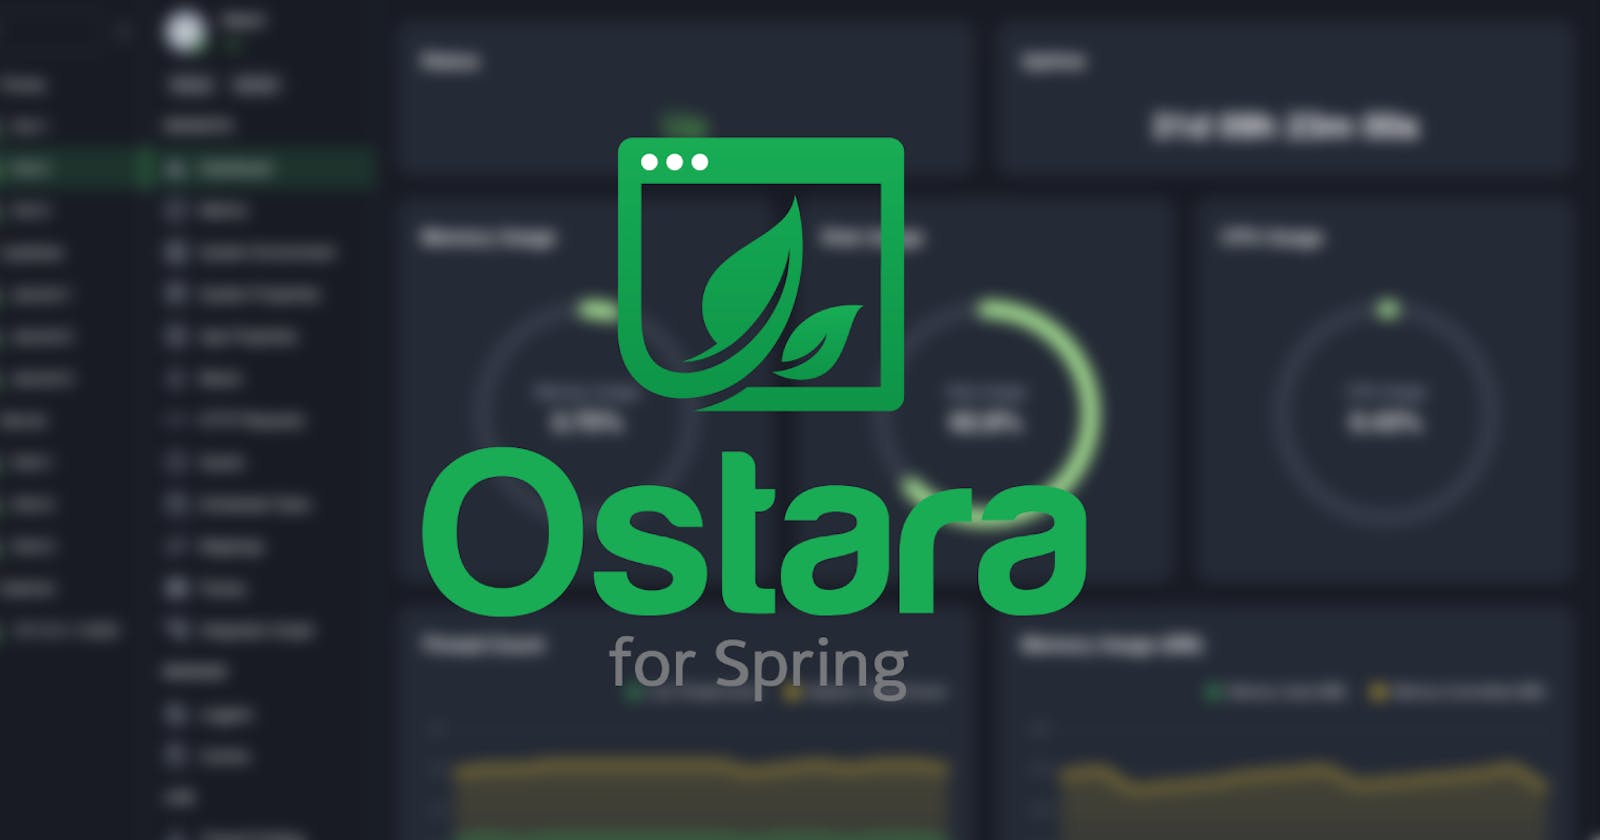 Introducing Ostara